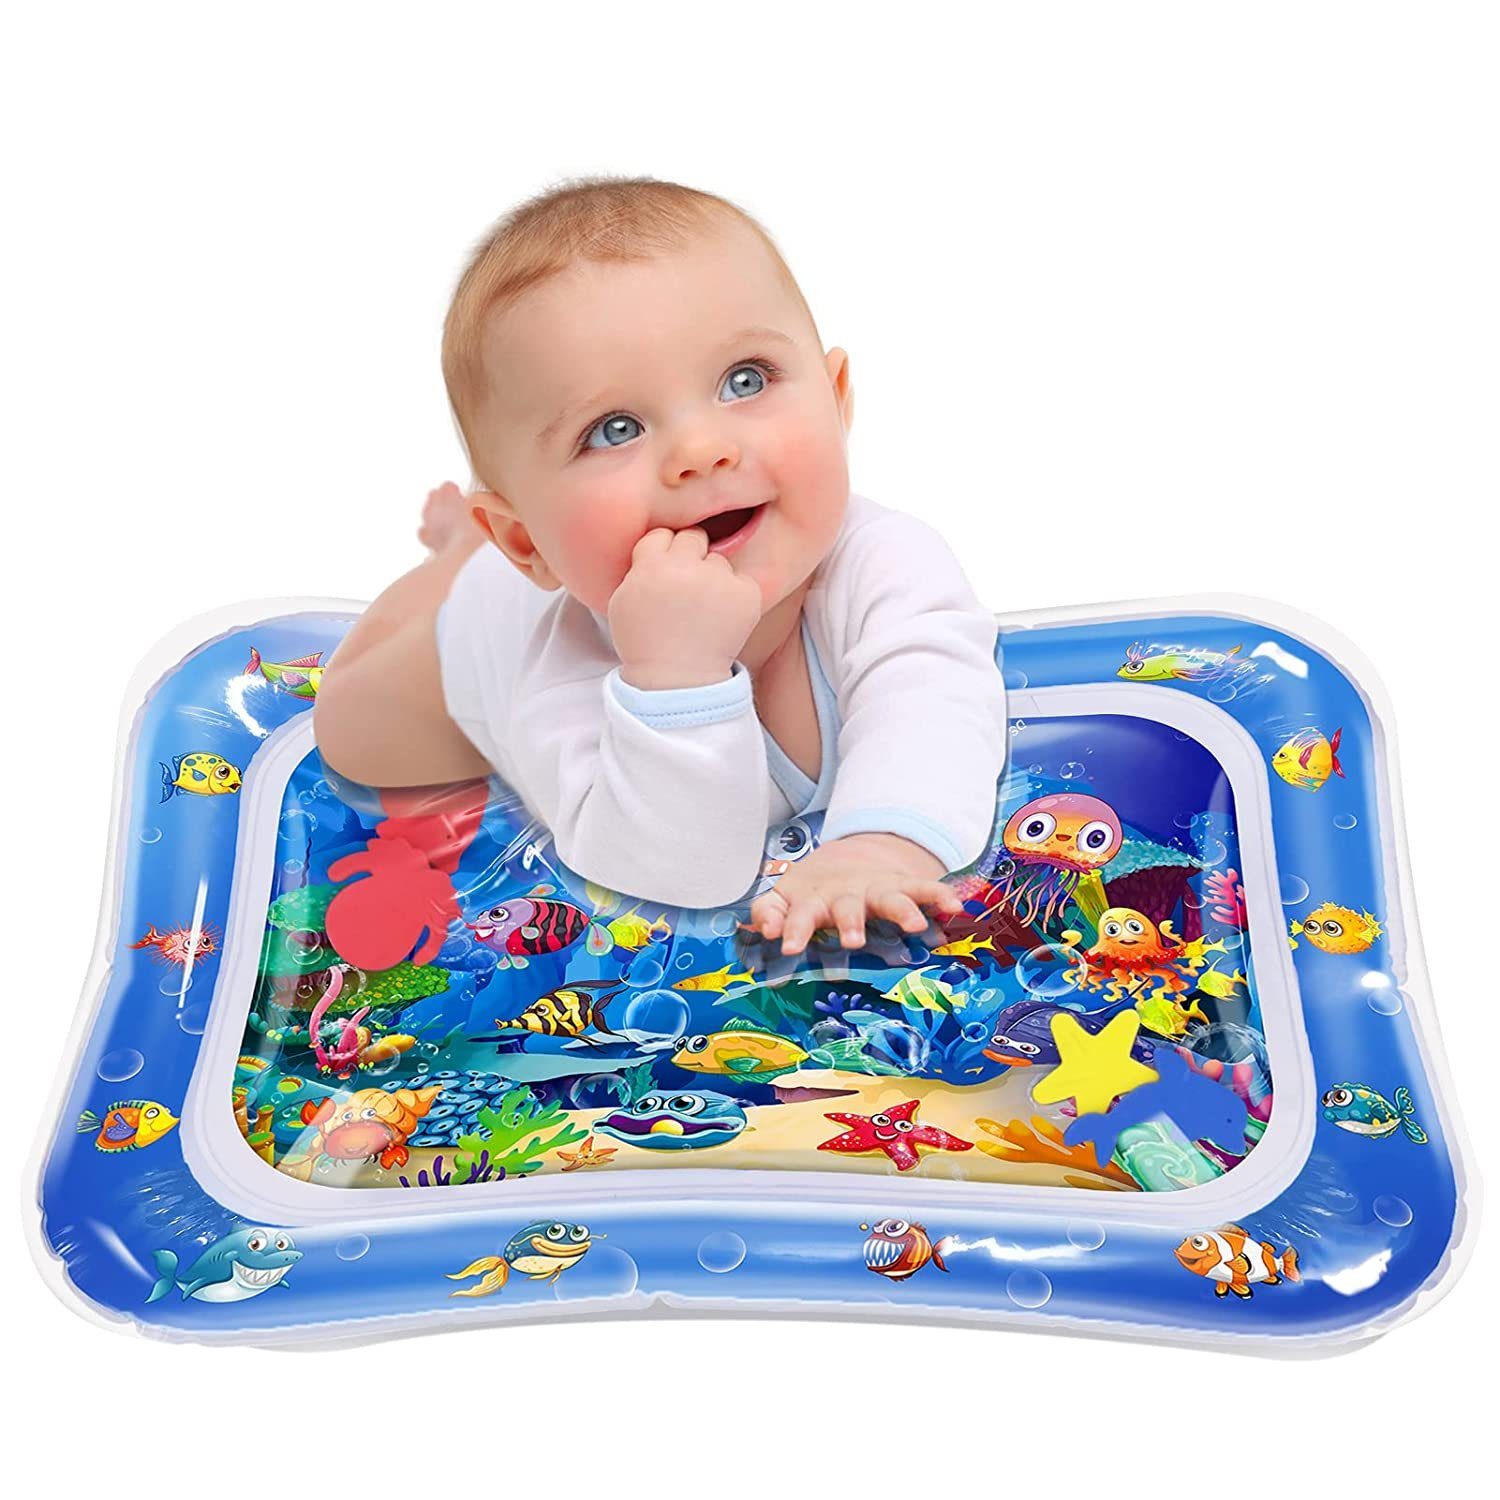 geeignet für 3-12 Monate BPA-freies Babyspielzeug verwendet für das Wachstum des Gehirns von Jungen und Mädchen Aktivitäts-Spiel-Center Baby-Spielzeug und Kleinkind-Unterhaltung Wasser-Spielmatte